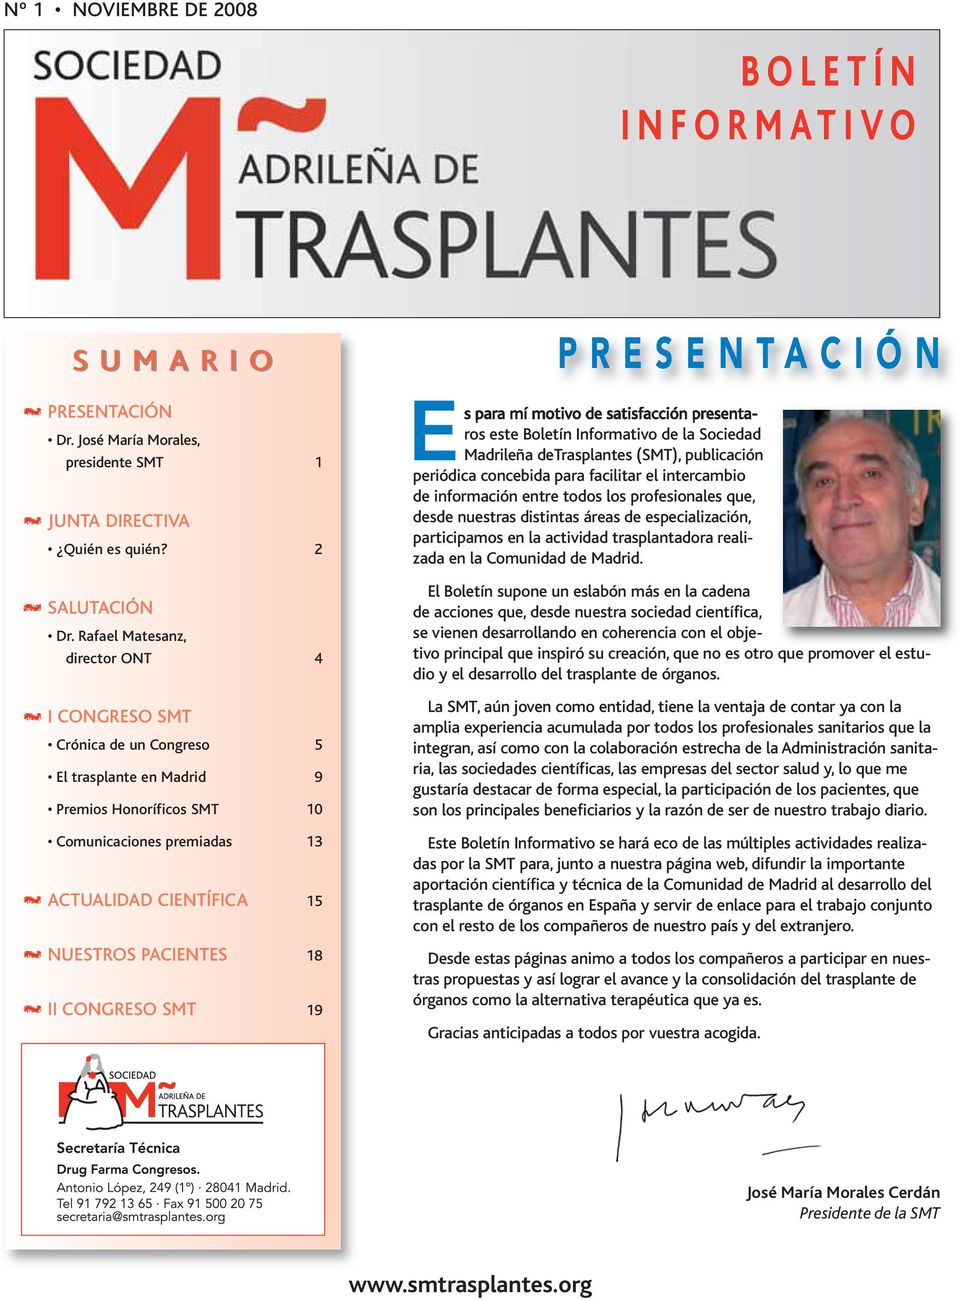 CONGRESO SM 19 PRESENACIÓN Es para mí motivo de satisfacción presentaros este Boletín Informativo de la Sociedad Madrileña derasplantes (SM), publicación periódica concebida para facilitar el